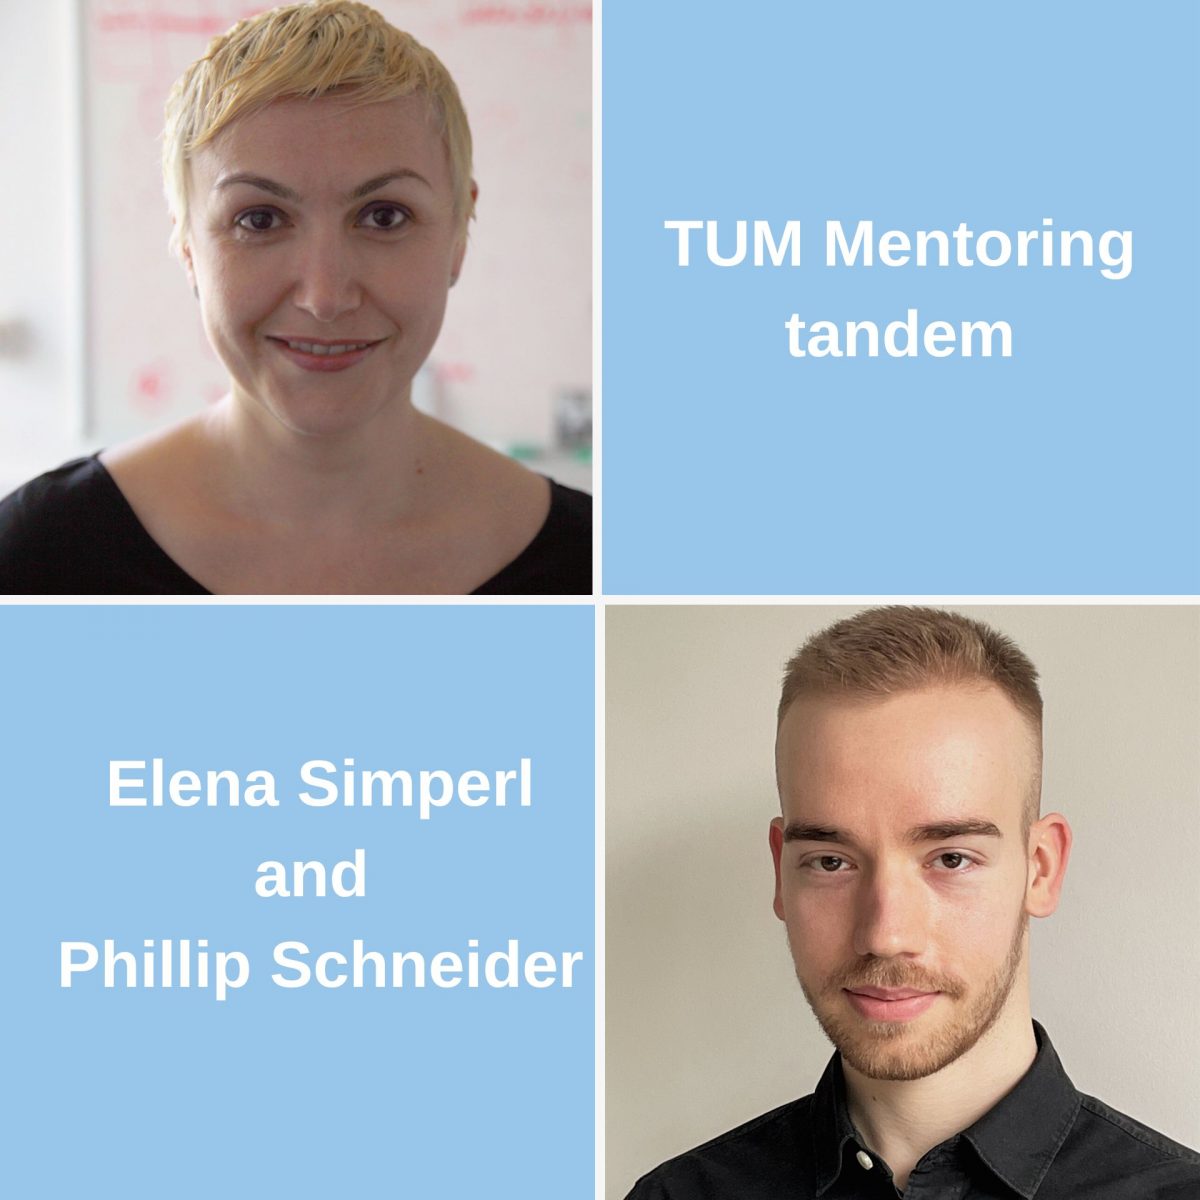 TUM alumna and mentor Prof. Dr. Elena Simperl and TUM alumnus and mentee Phillip Schneider.